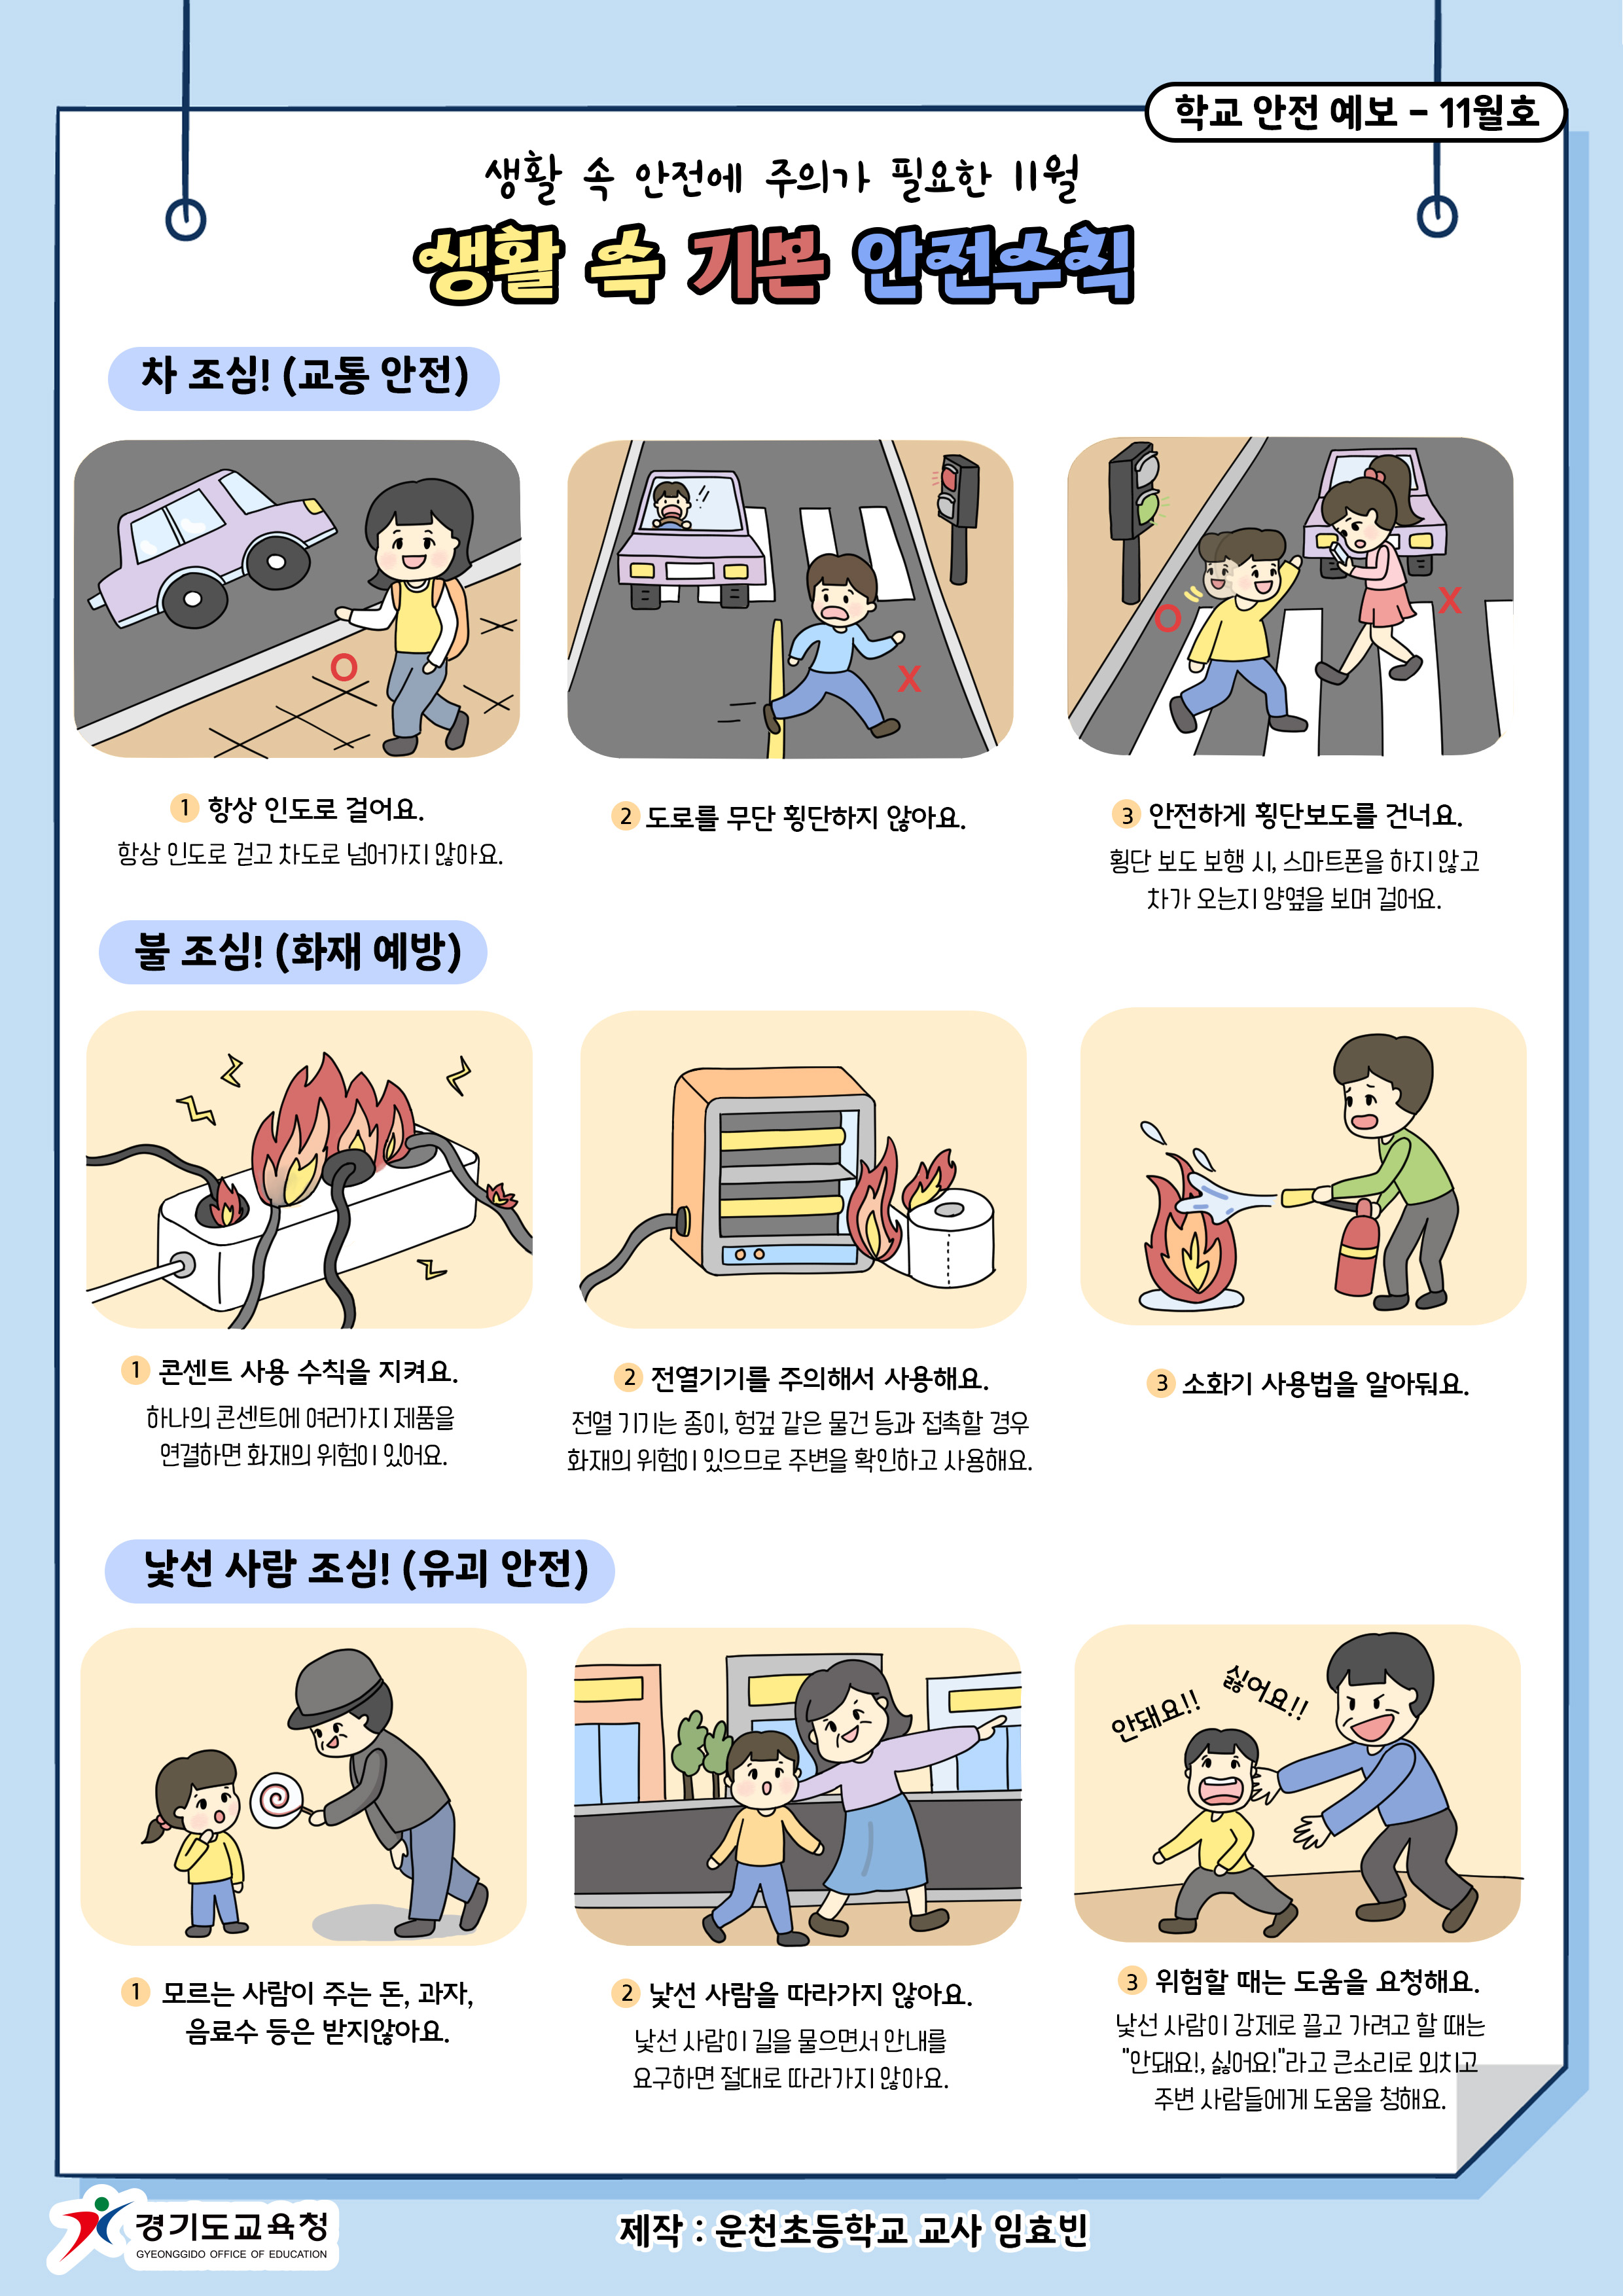 [일반] 학교안전사고 예보 11월호(생활 속 기본 안전수칙)의 첨부이미지 1